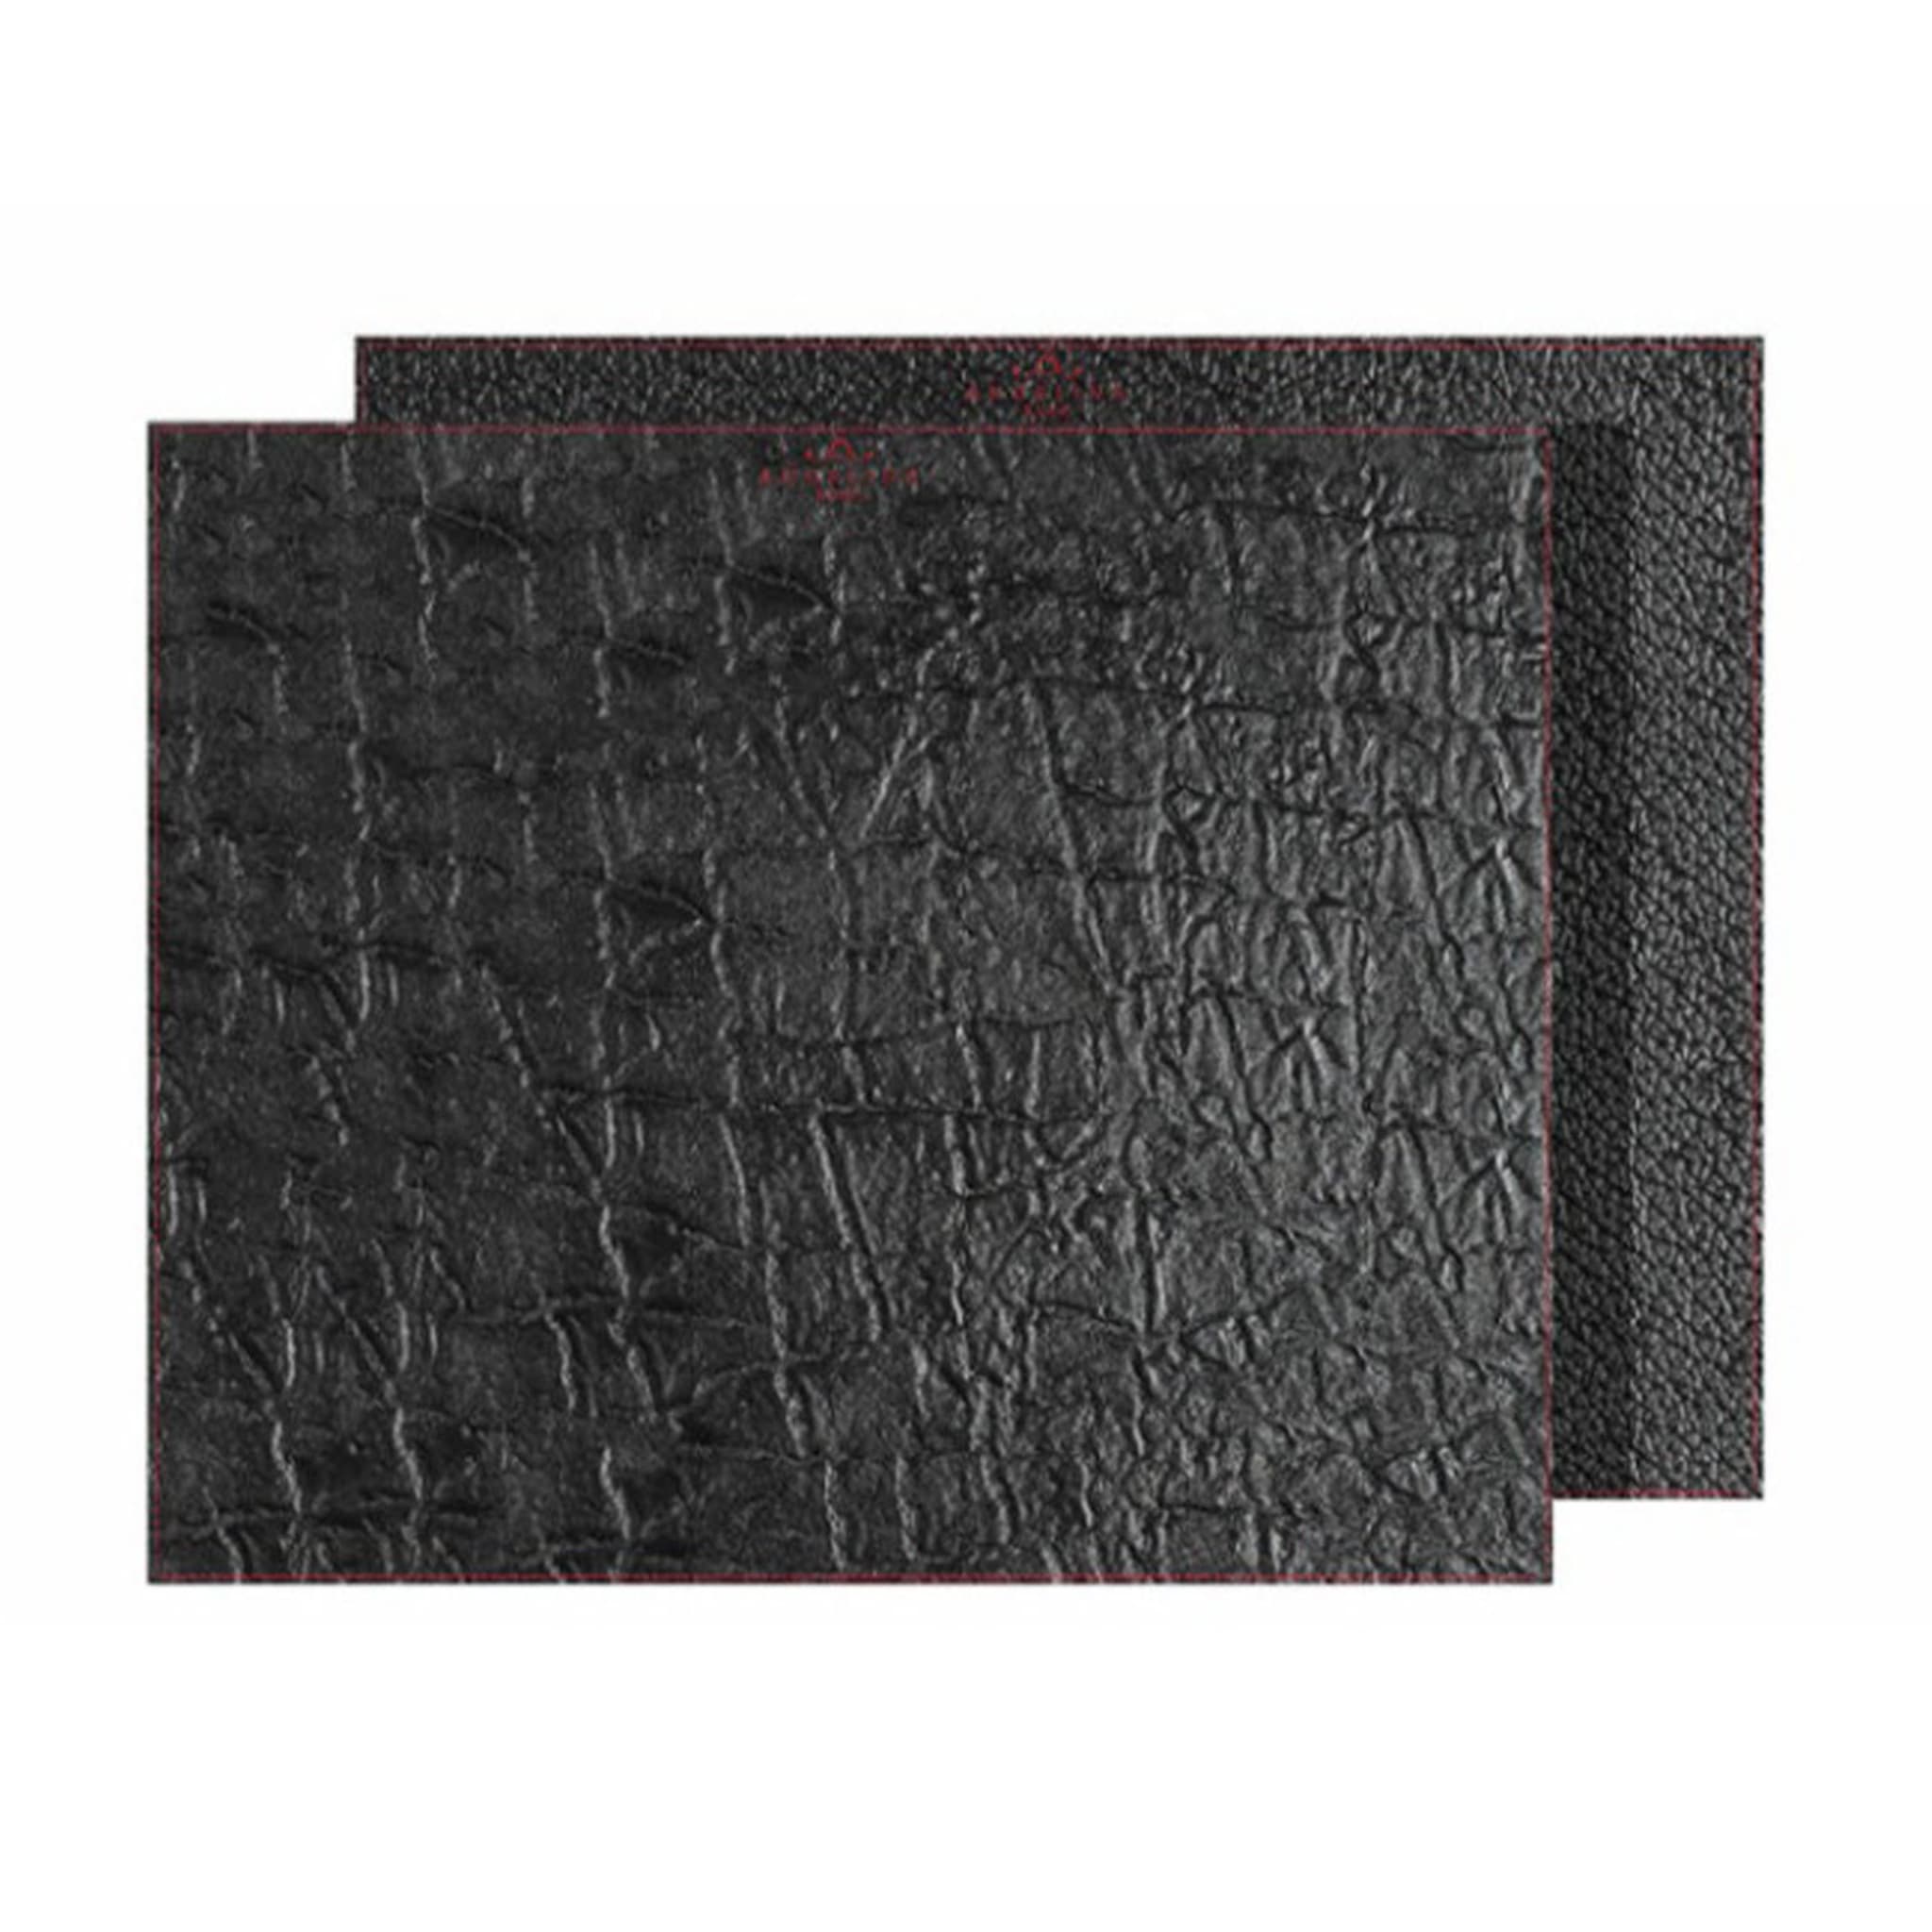 Tanzania Medium Set of 2 Rectangular Black Leather Placemats - Main view